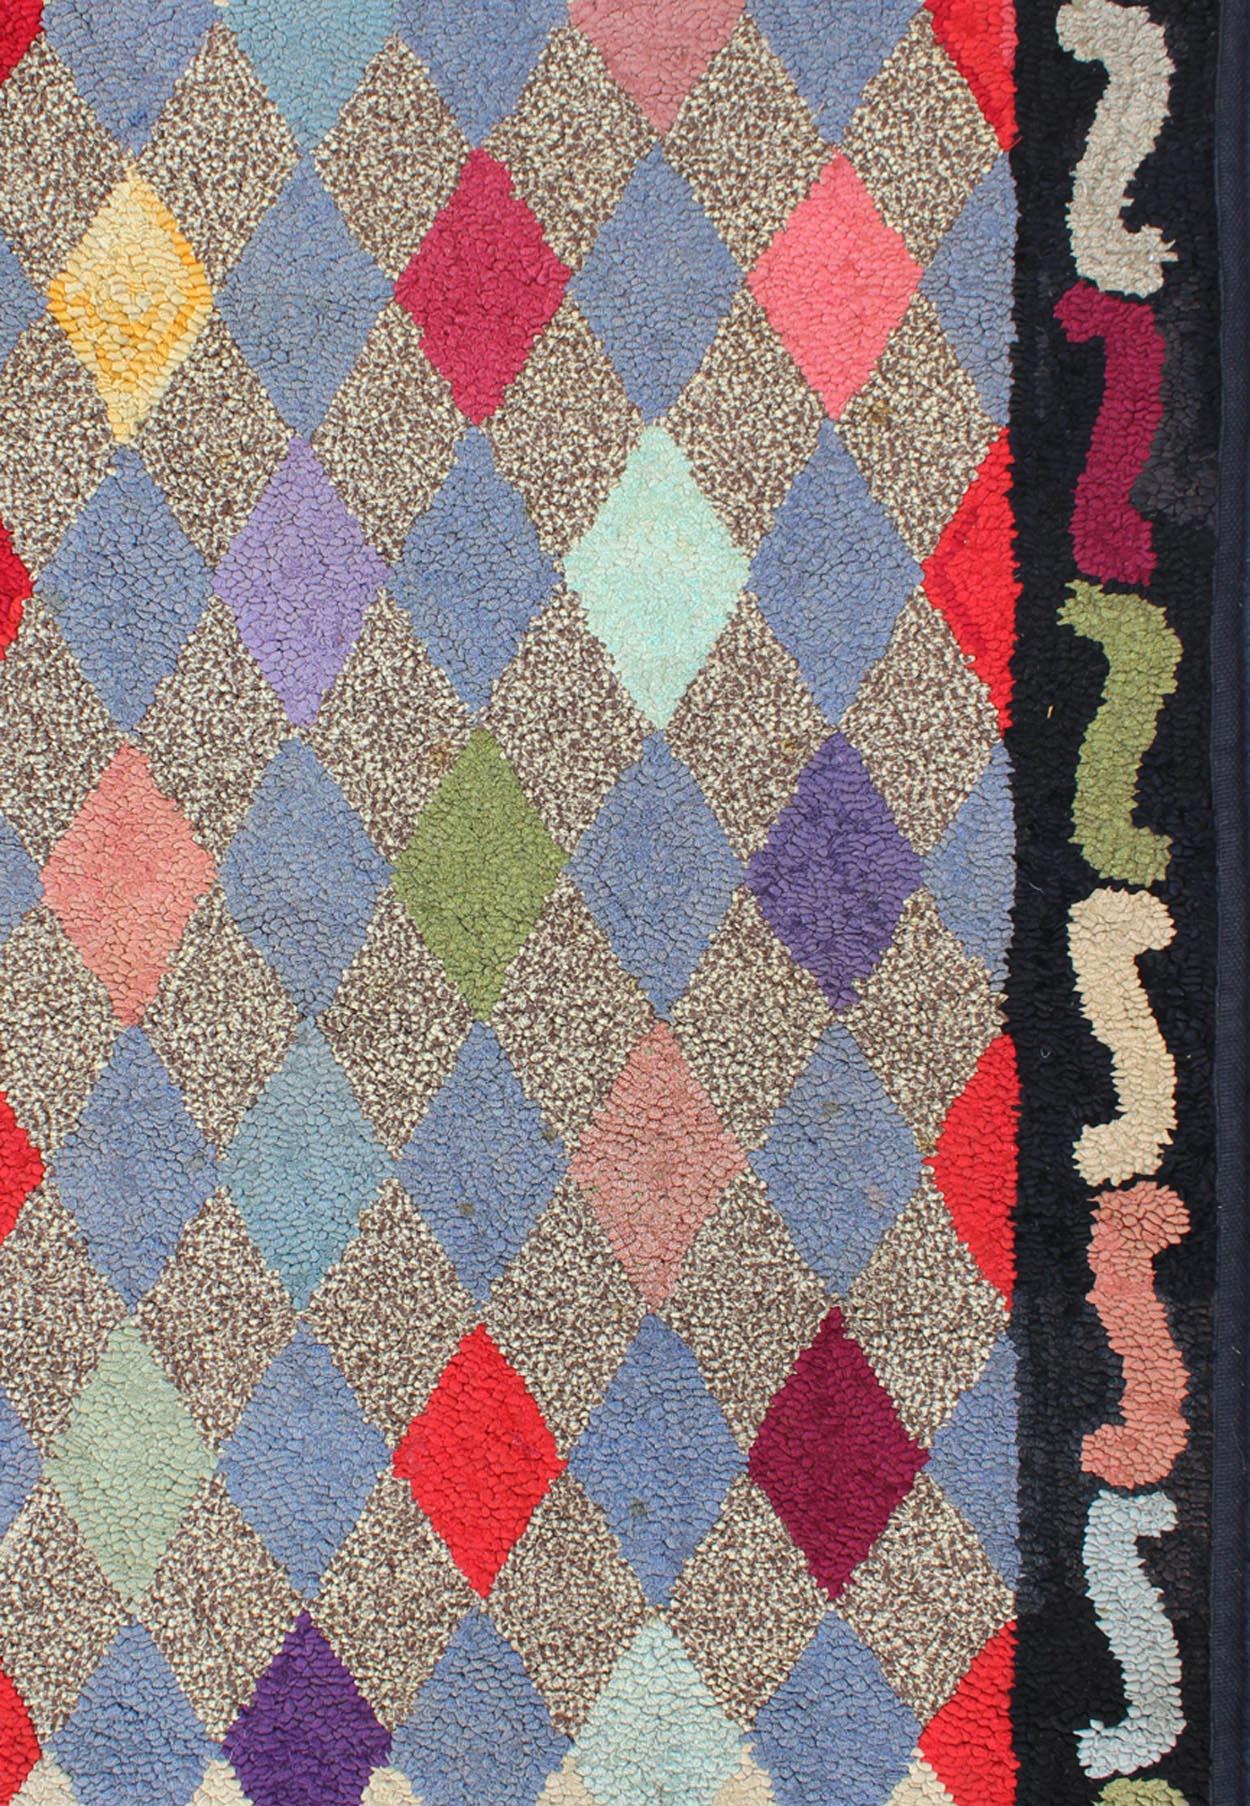 Amerikanischer Hooked Rug Design, Teppich S12-0904, Herkunftsland / Art: Vereinigte Staaten / geknüpft, um 1920.

Dieser American Hooked-Teppich zeigt ein wunderschönes Muster aus vertikal angeordneten floralen Medaillonmotiven in einer Vielzahl